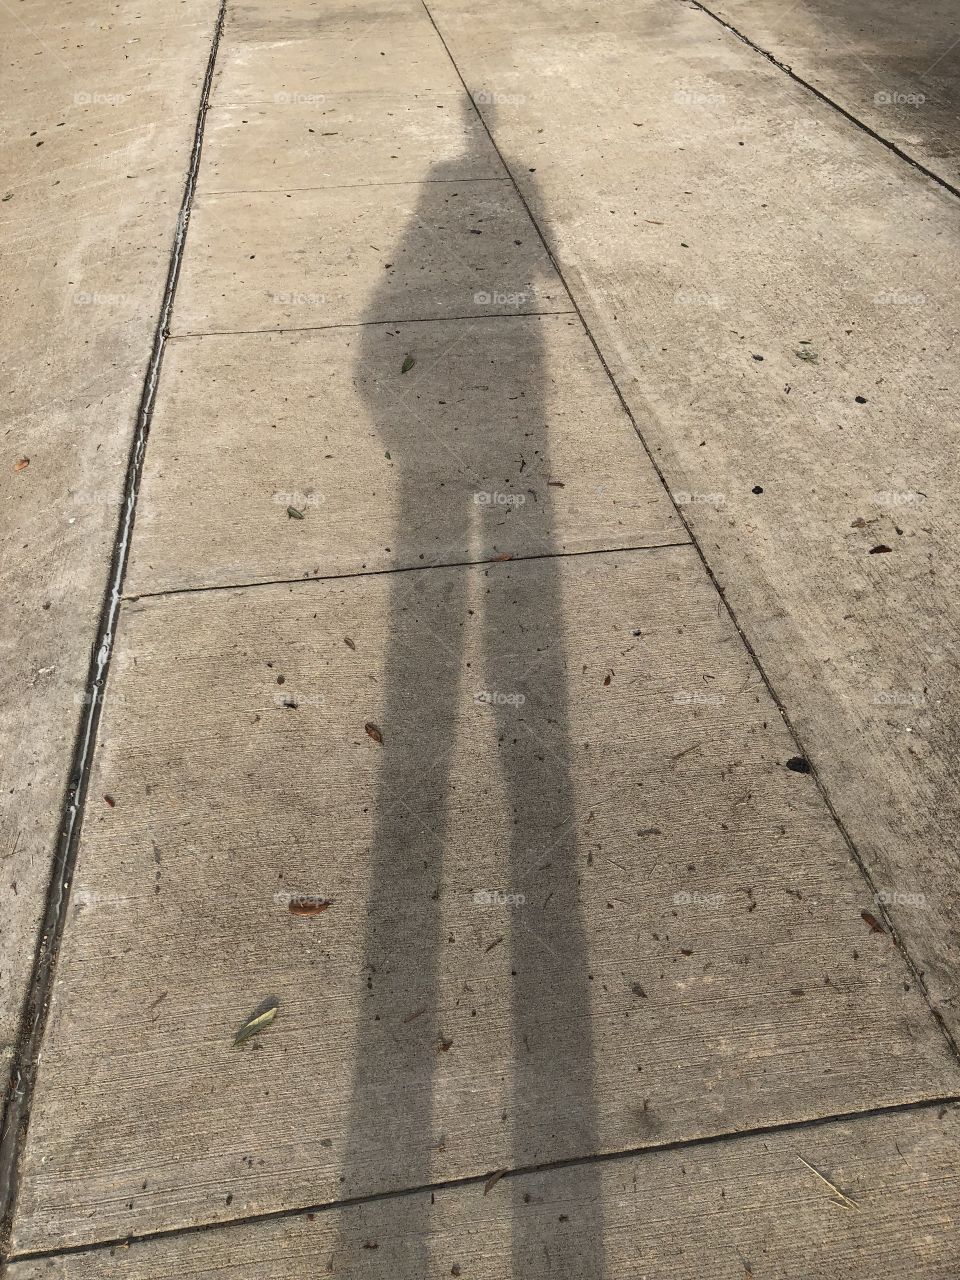 Human shadow 